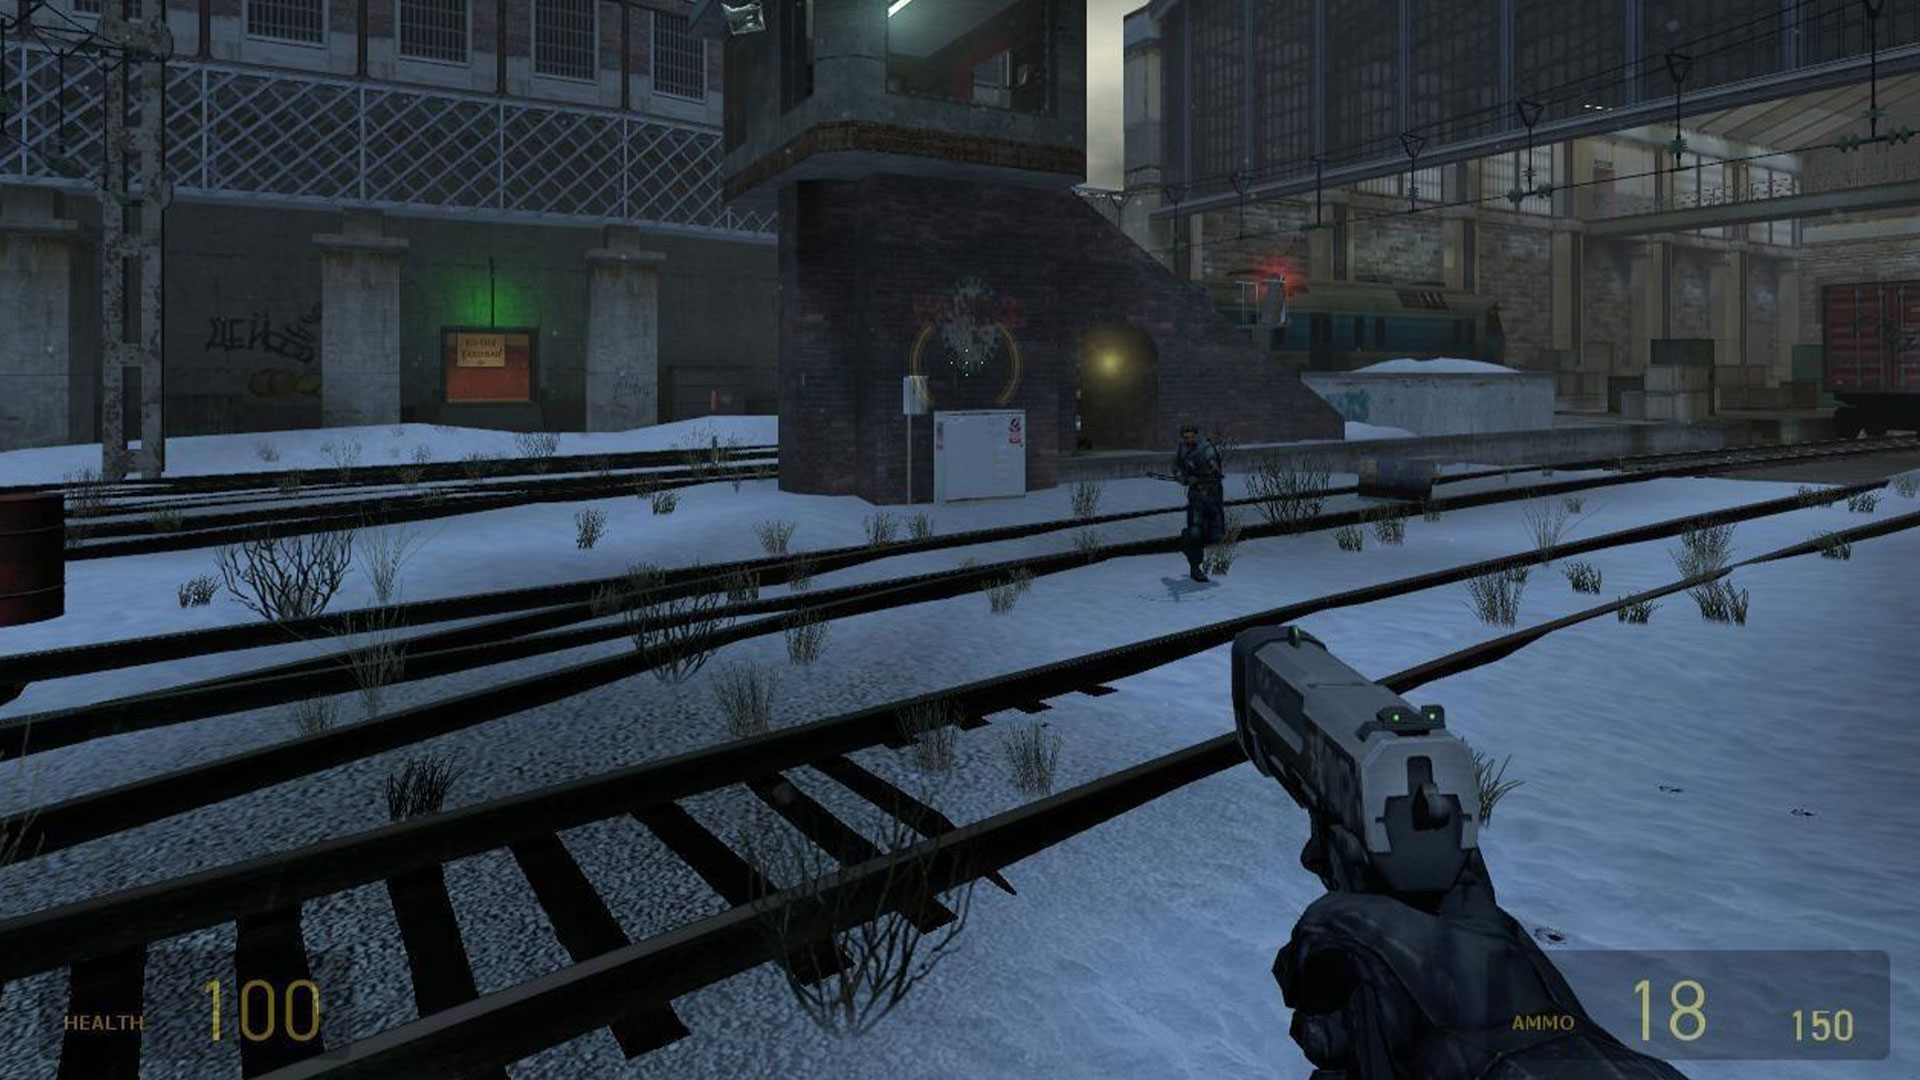 Скриншот Half-Life 2 deathmatch, демонстрирующий многопользовательский онлайн-экшен